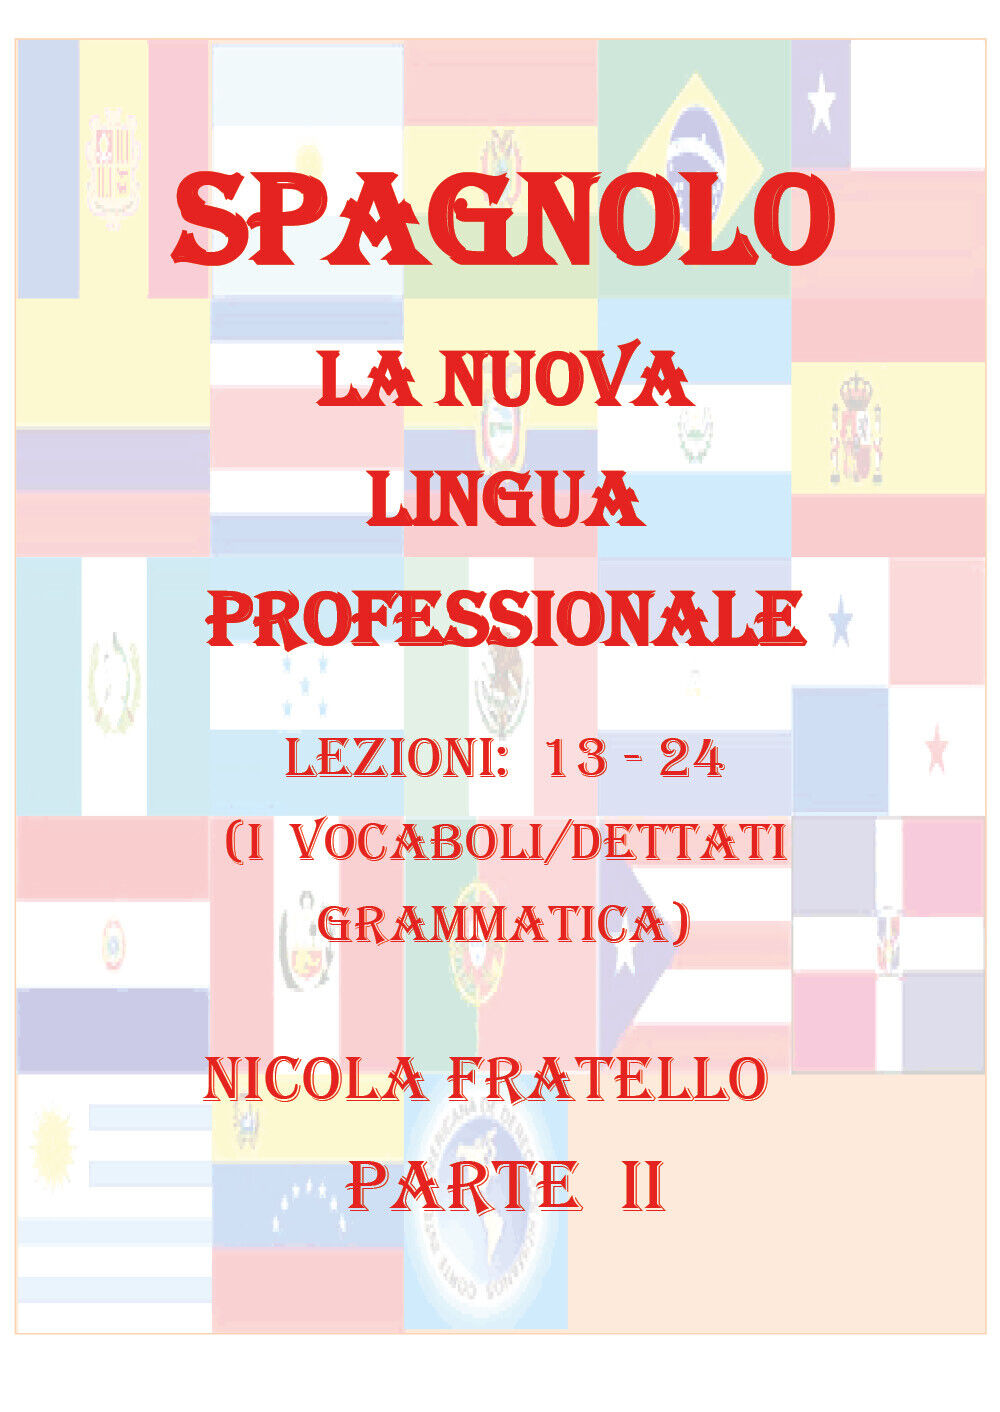 La Nuova Lingua Professionale Spagnolo - Parte II -Nicola Fratello - P